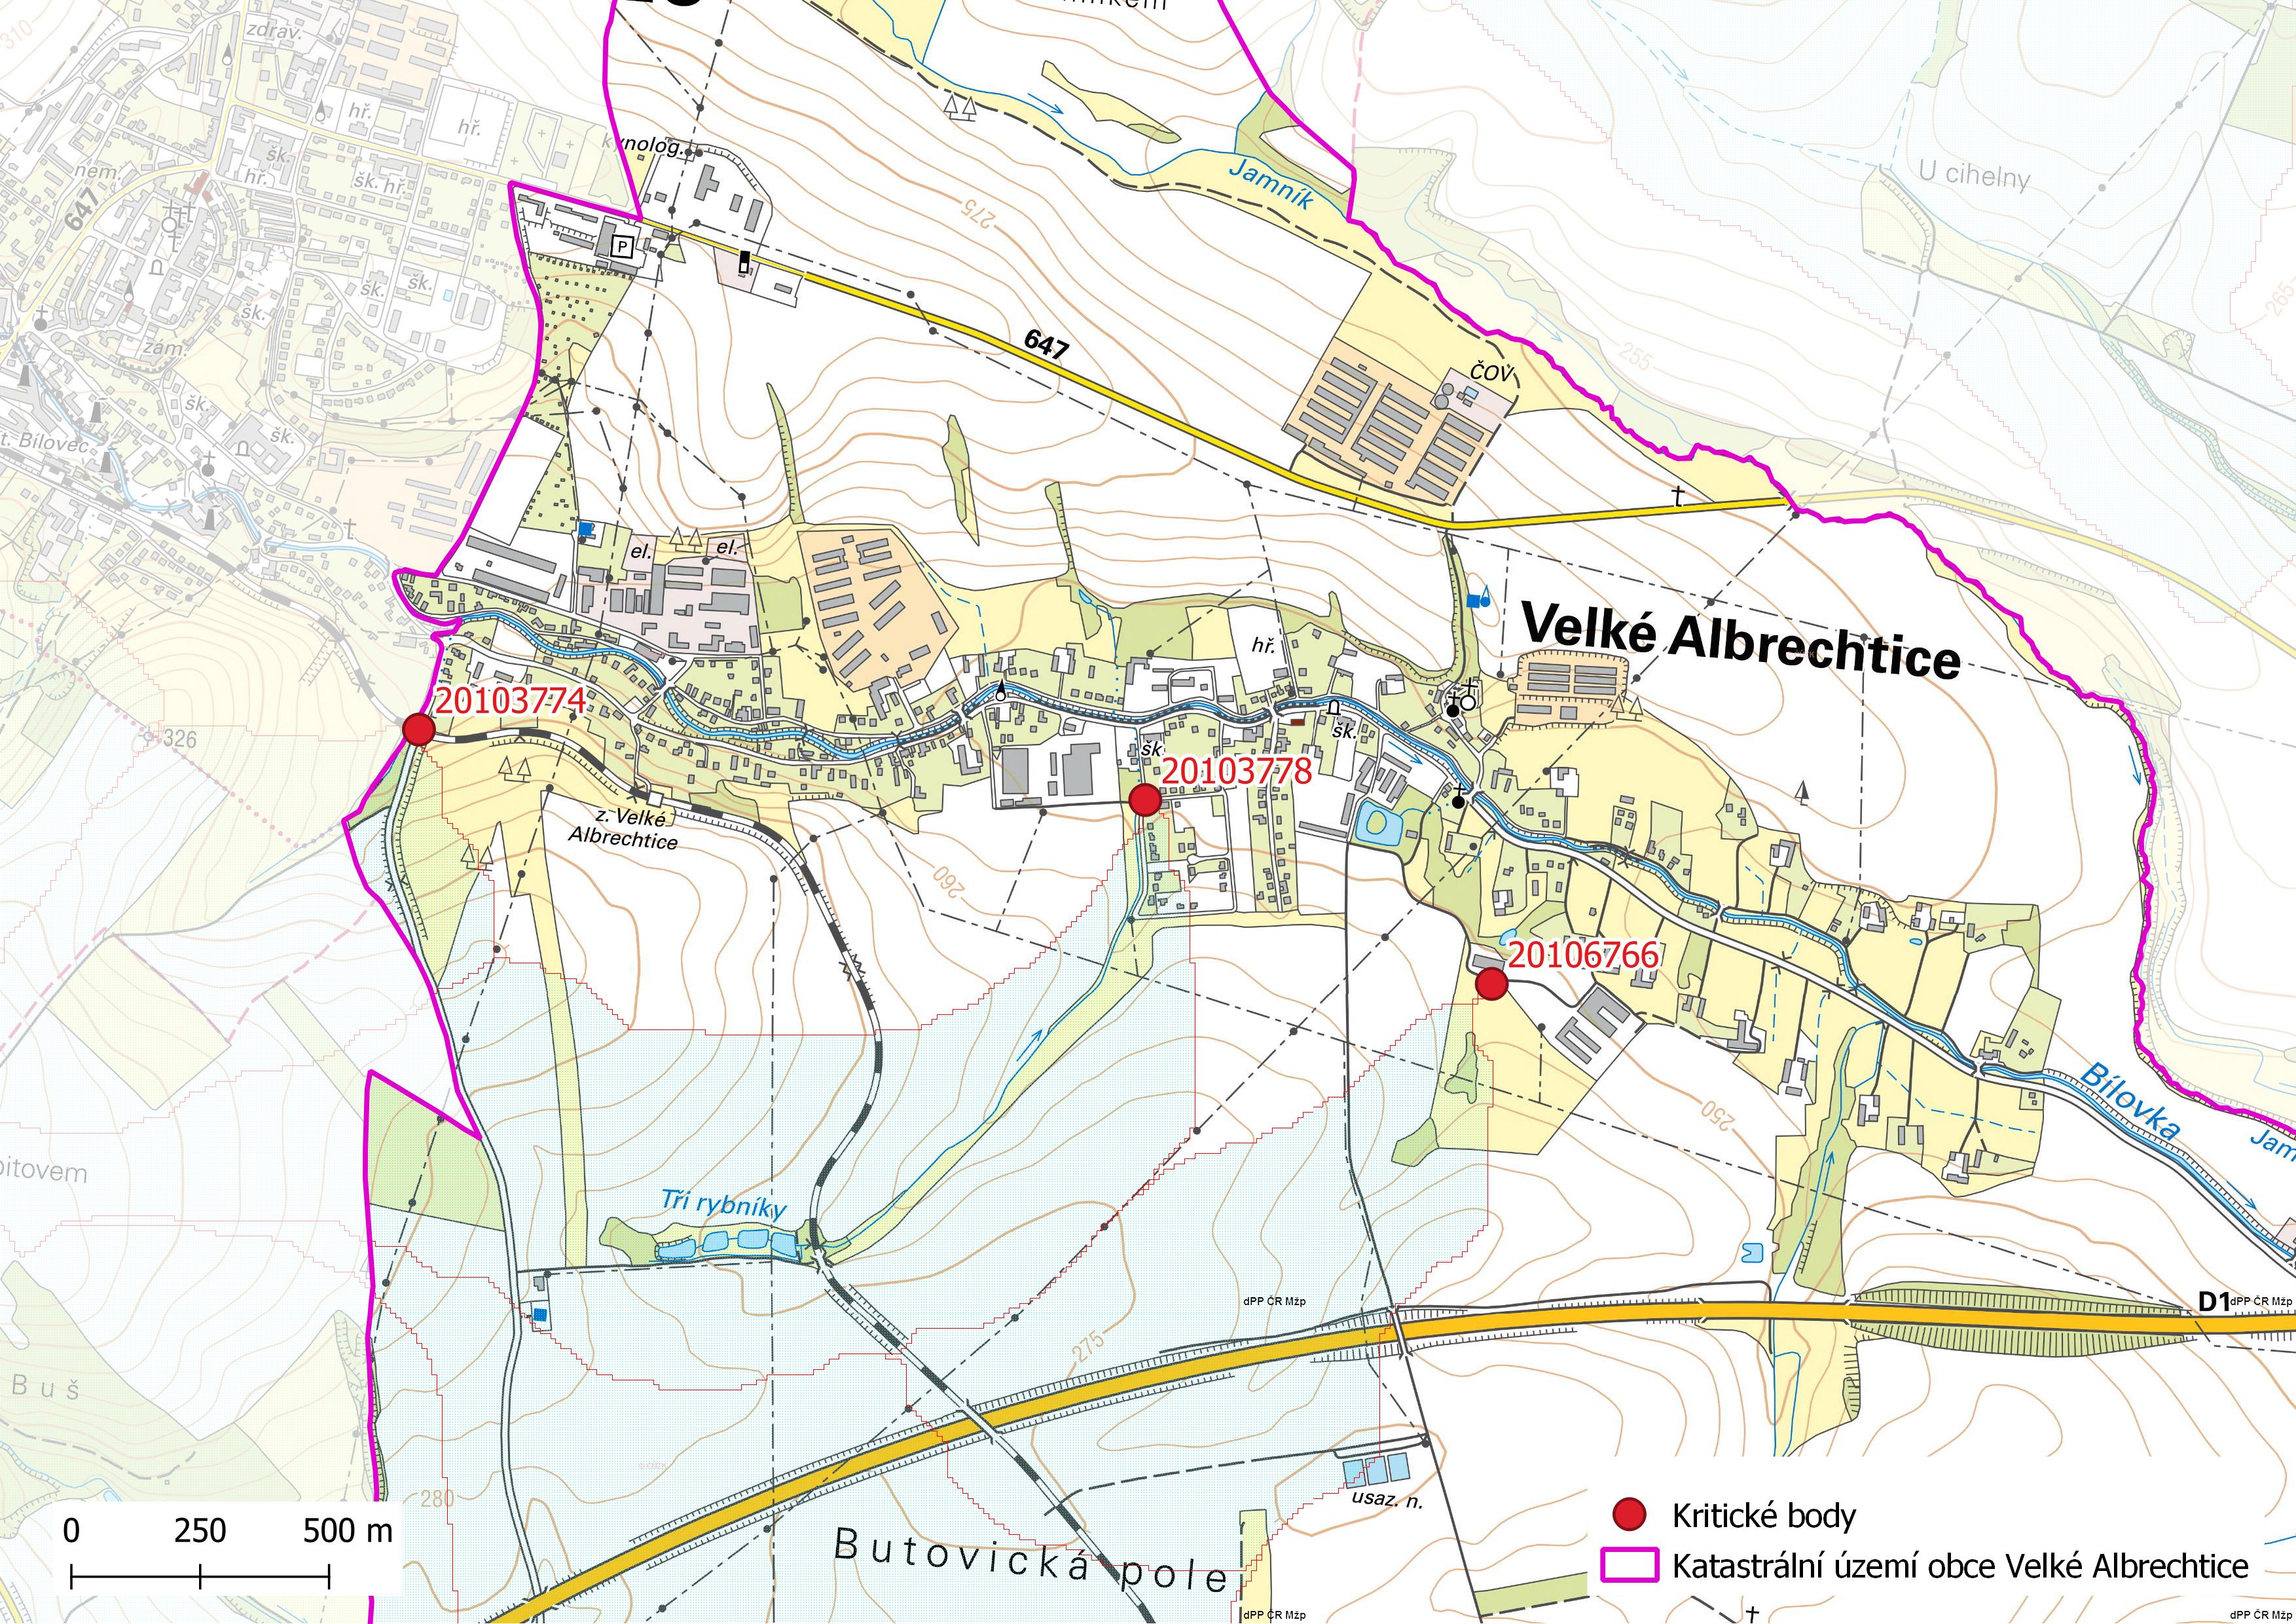 Kritické body na území obce Velké Albrechtice